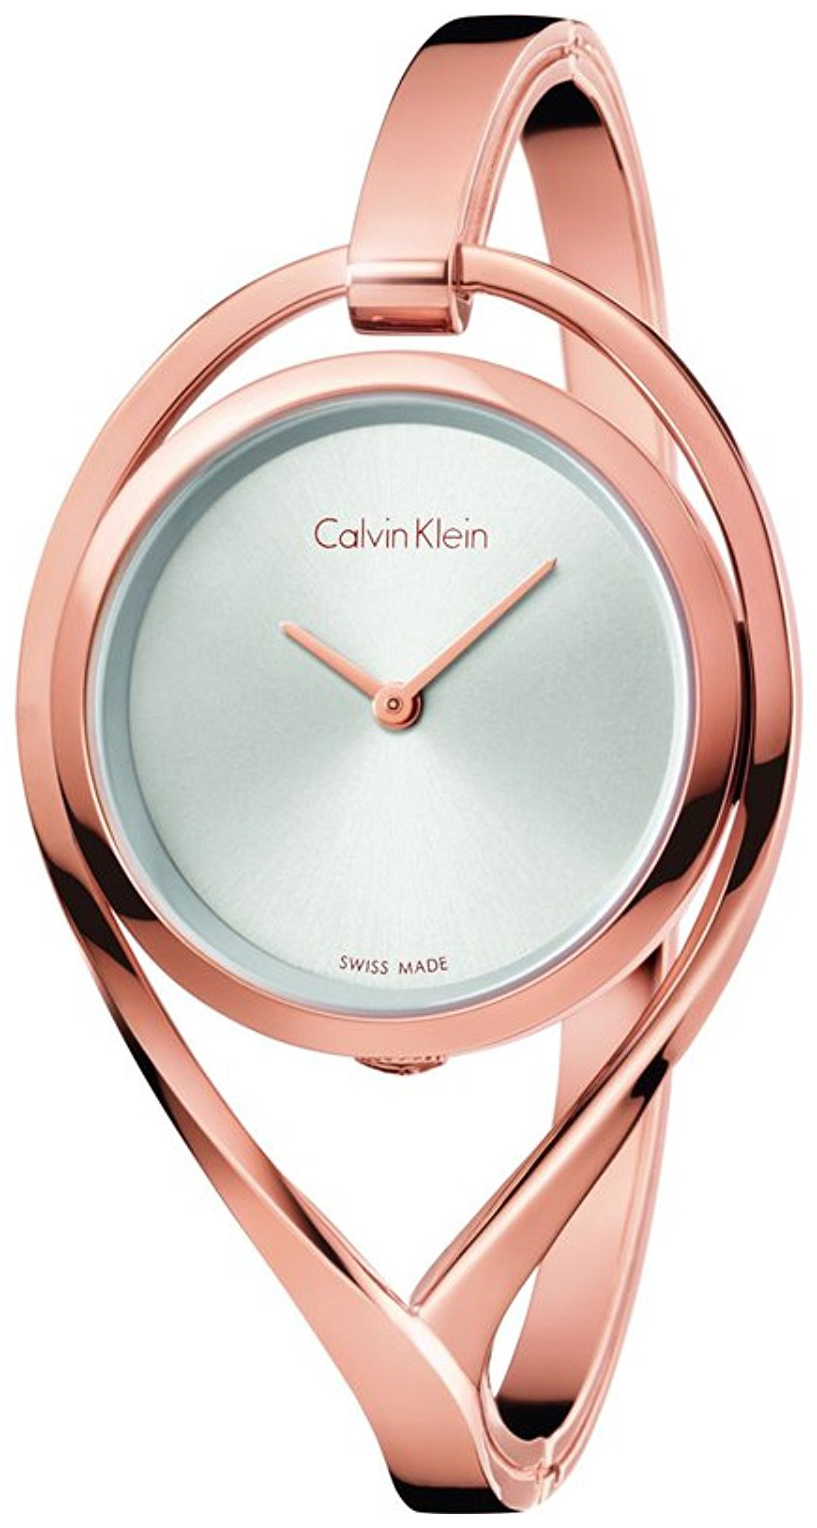 Calvin Klein 99999 Damklocka K6L2S616 Silverfärgad/Roséguldstonat stål - Calvin Klein